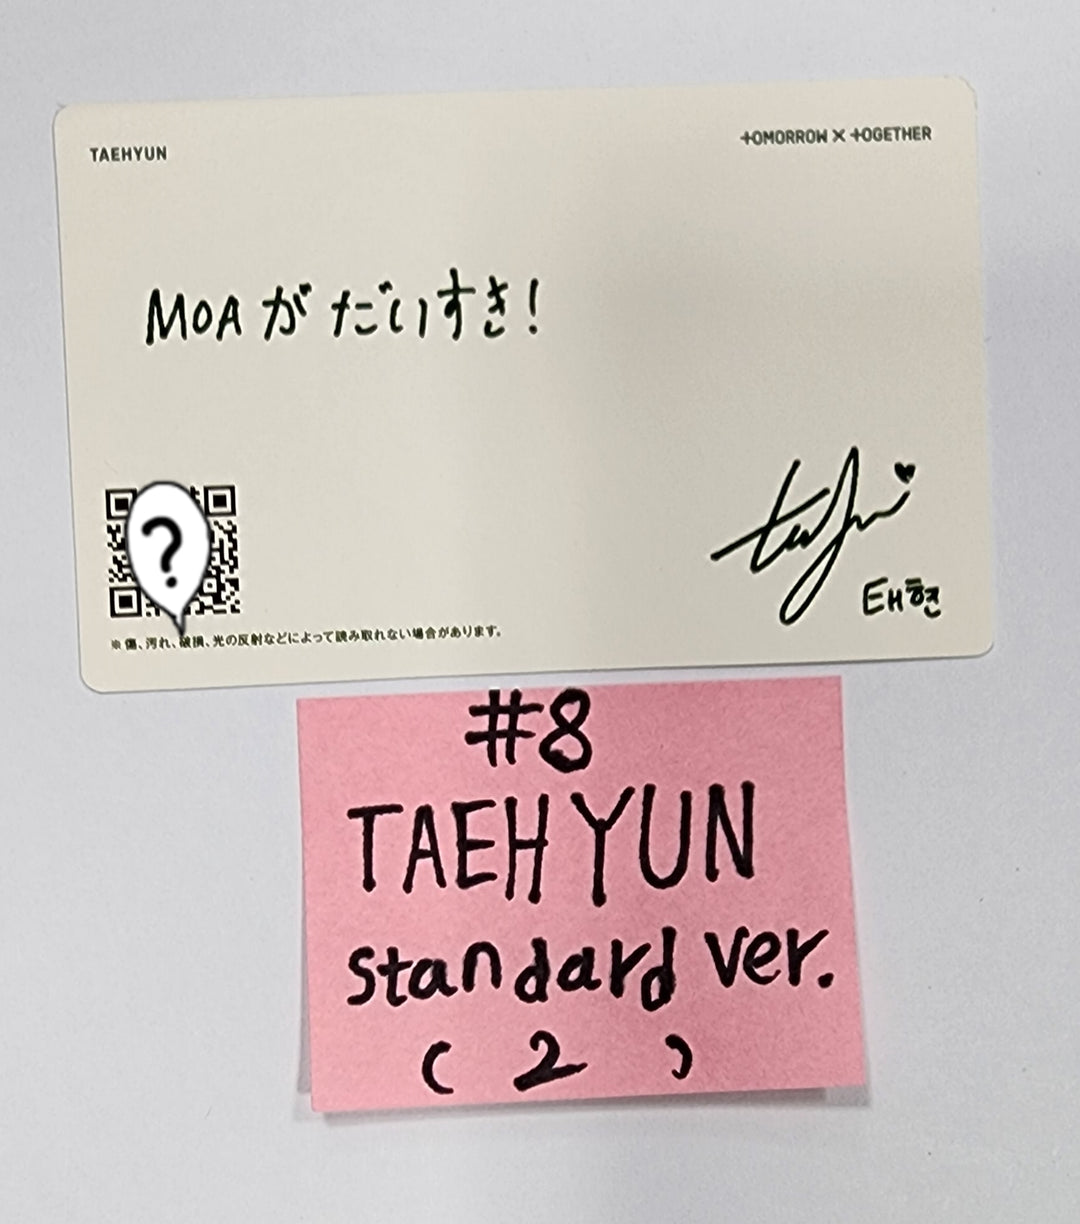 TXT JP 2nd Album "SWEET" - Official Photocard [Standard Ver]